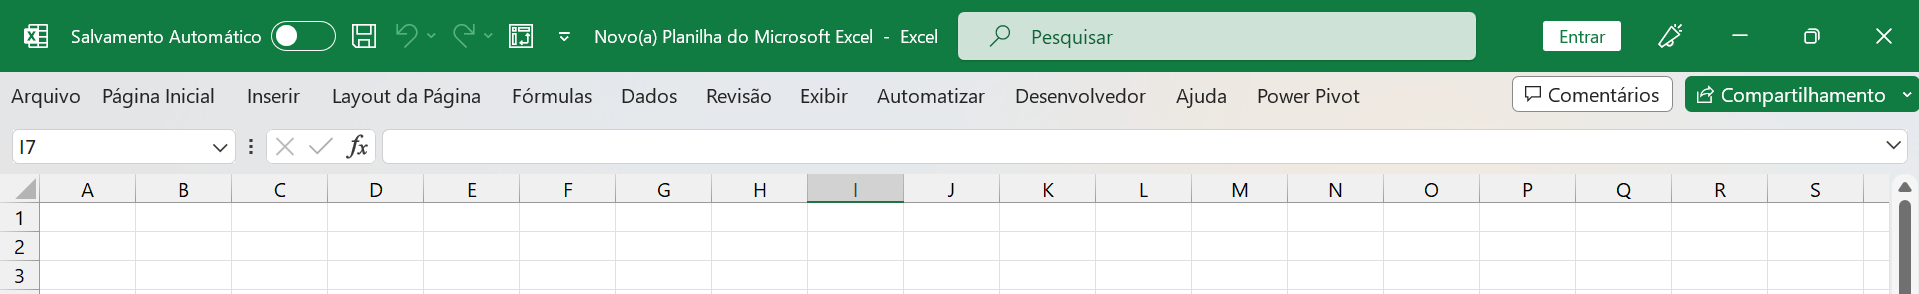 Faixa de Opções no Excel, guias